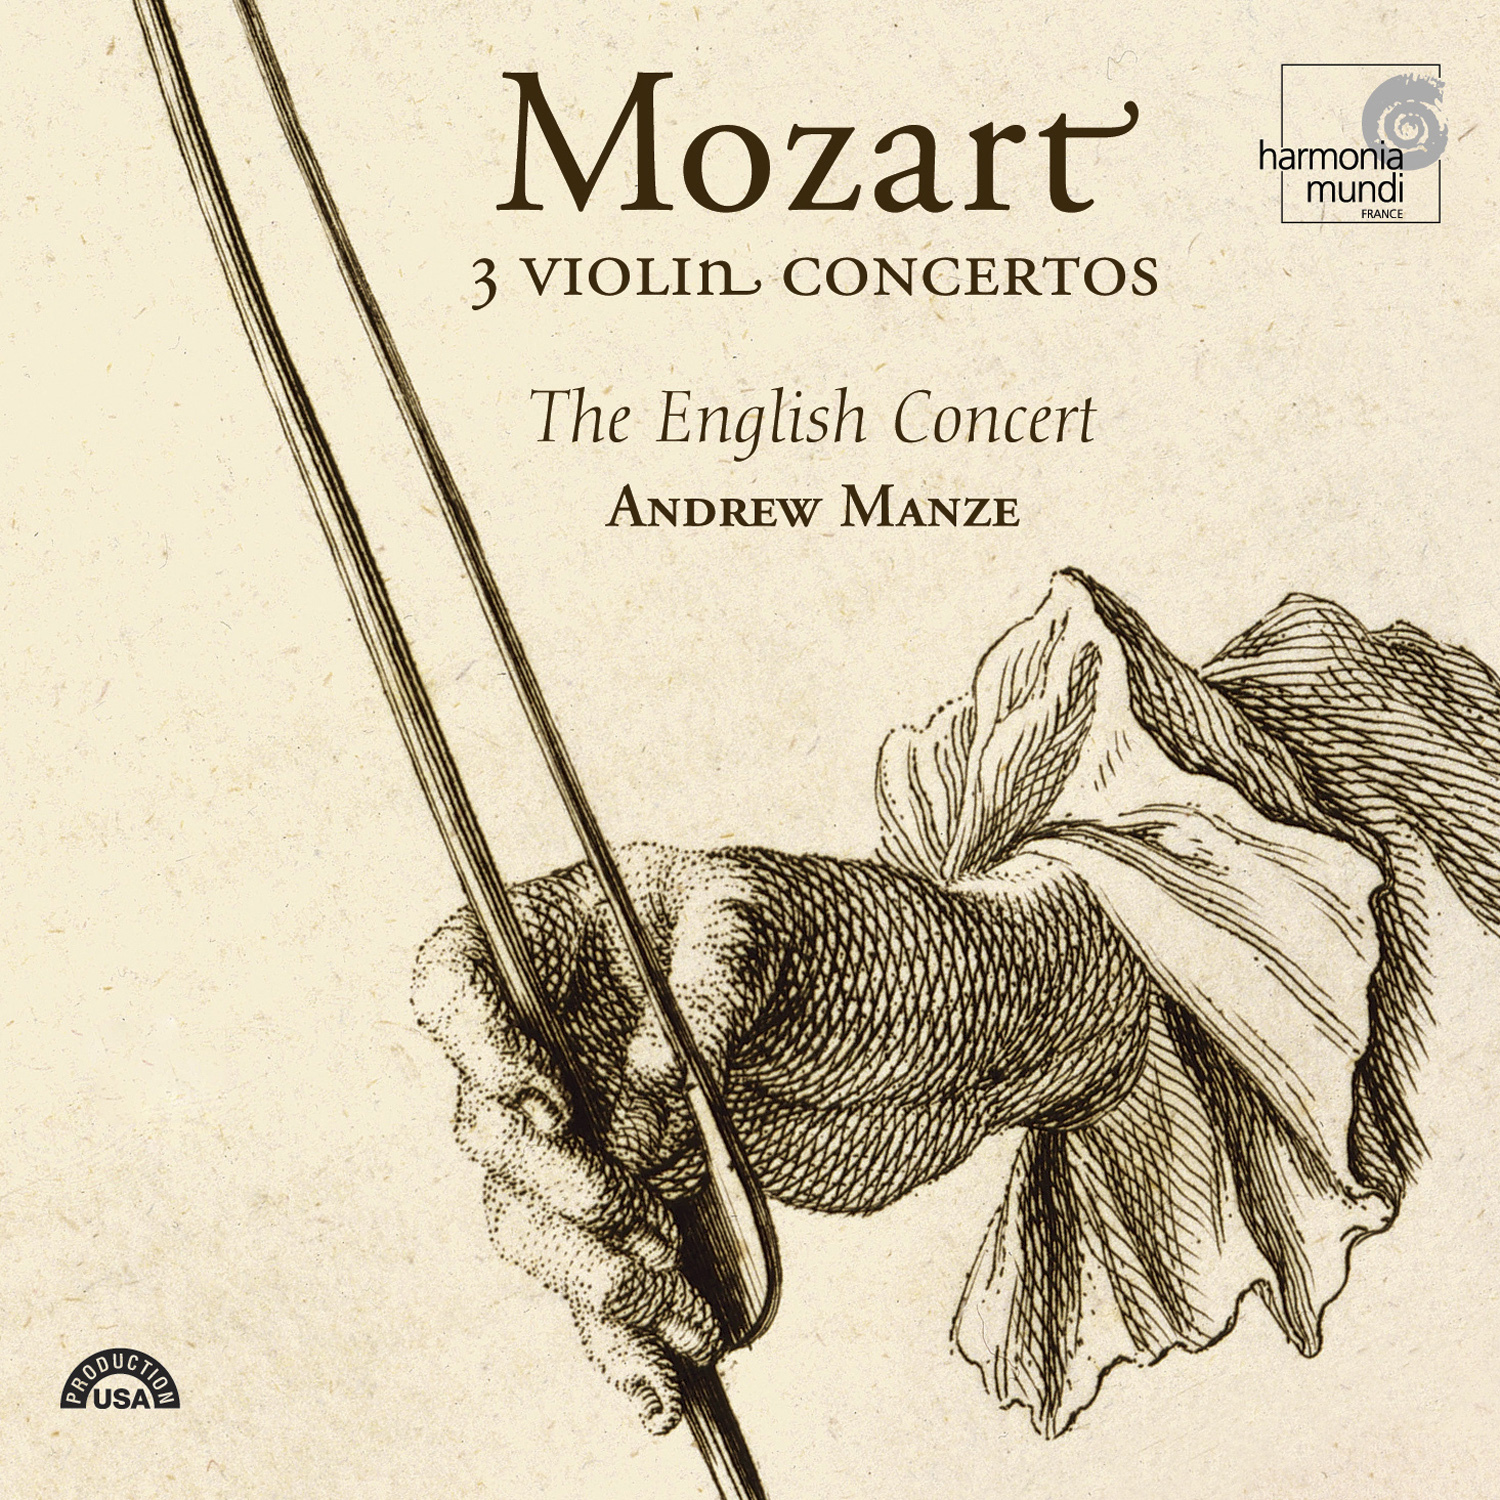 Violin Concerto No. 5 in A major, K. 219: I. Allegro aperto - Adagio - Allegro aperto